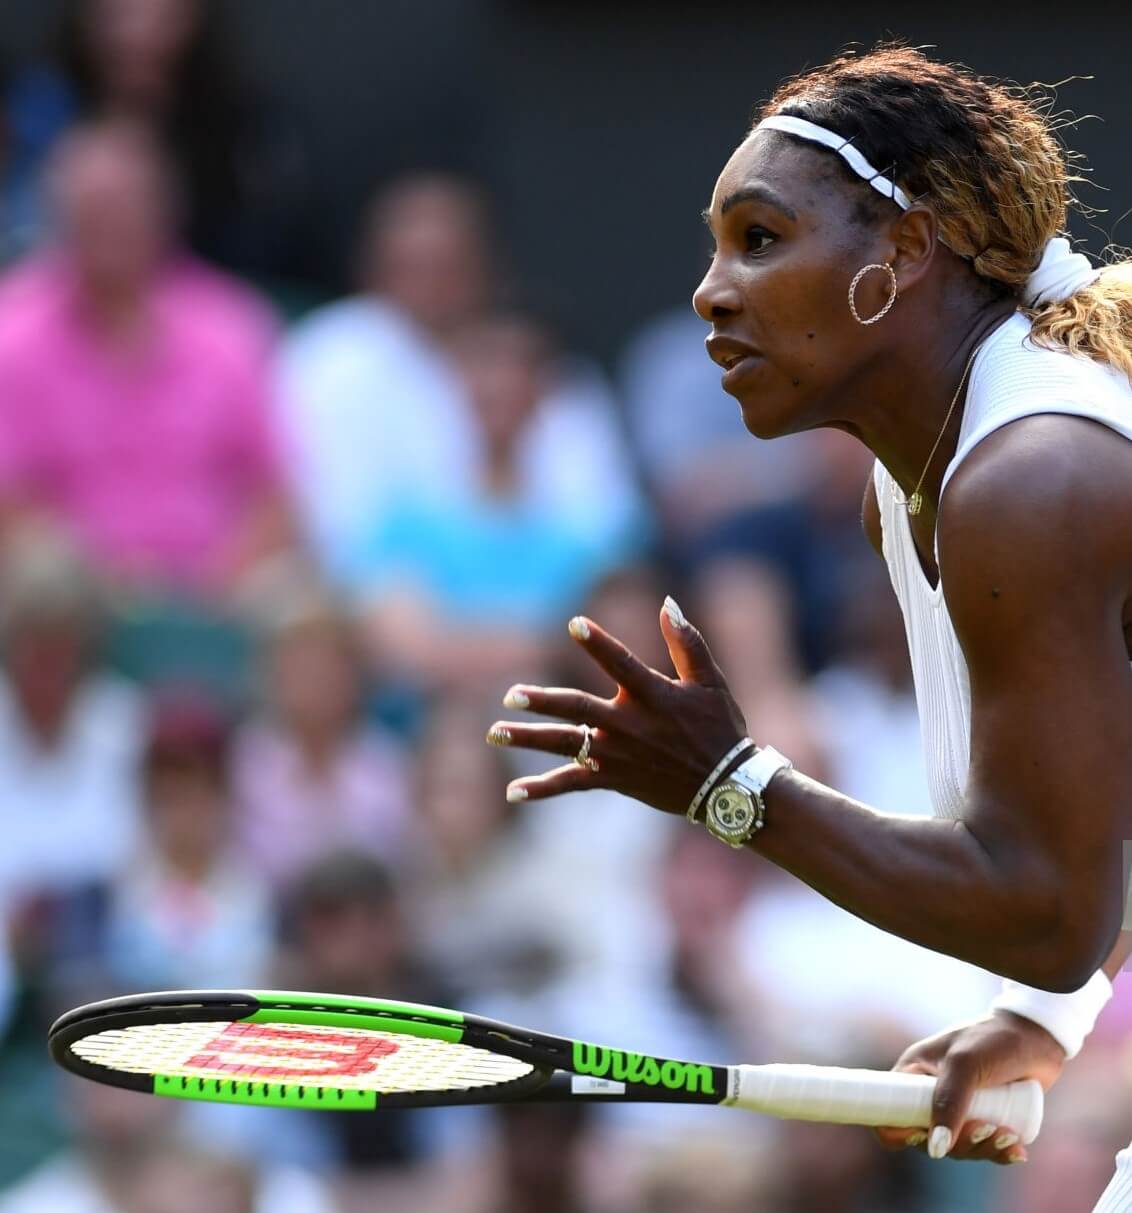 Serena-Williams-Wimbledon-Audemars-Piguet-c-Getty-Images.jpg